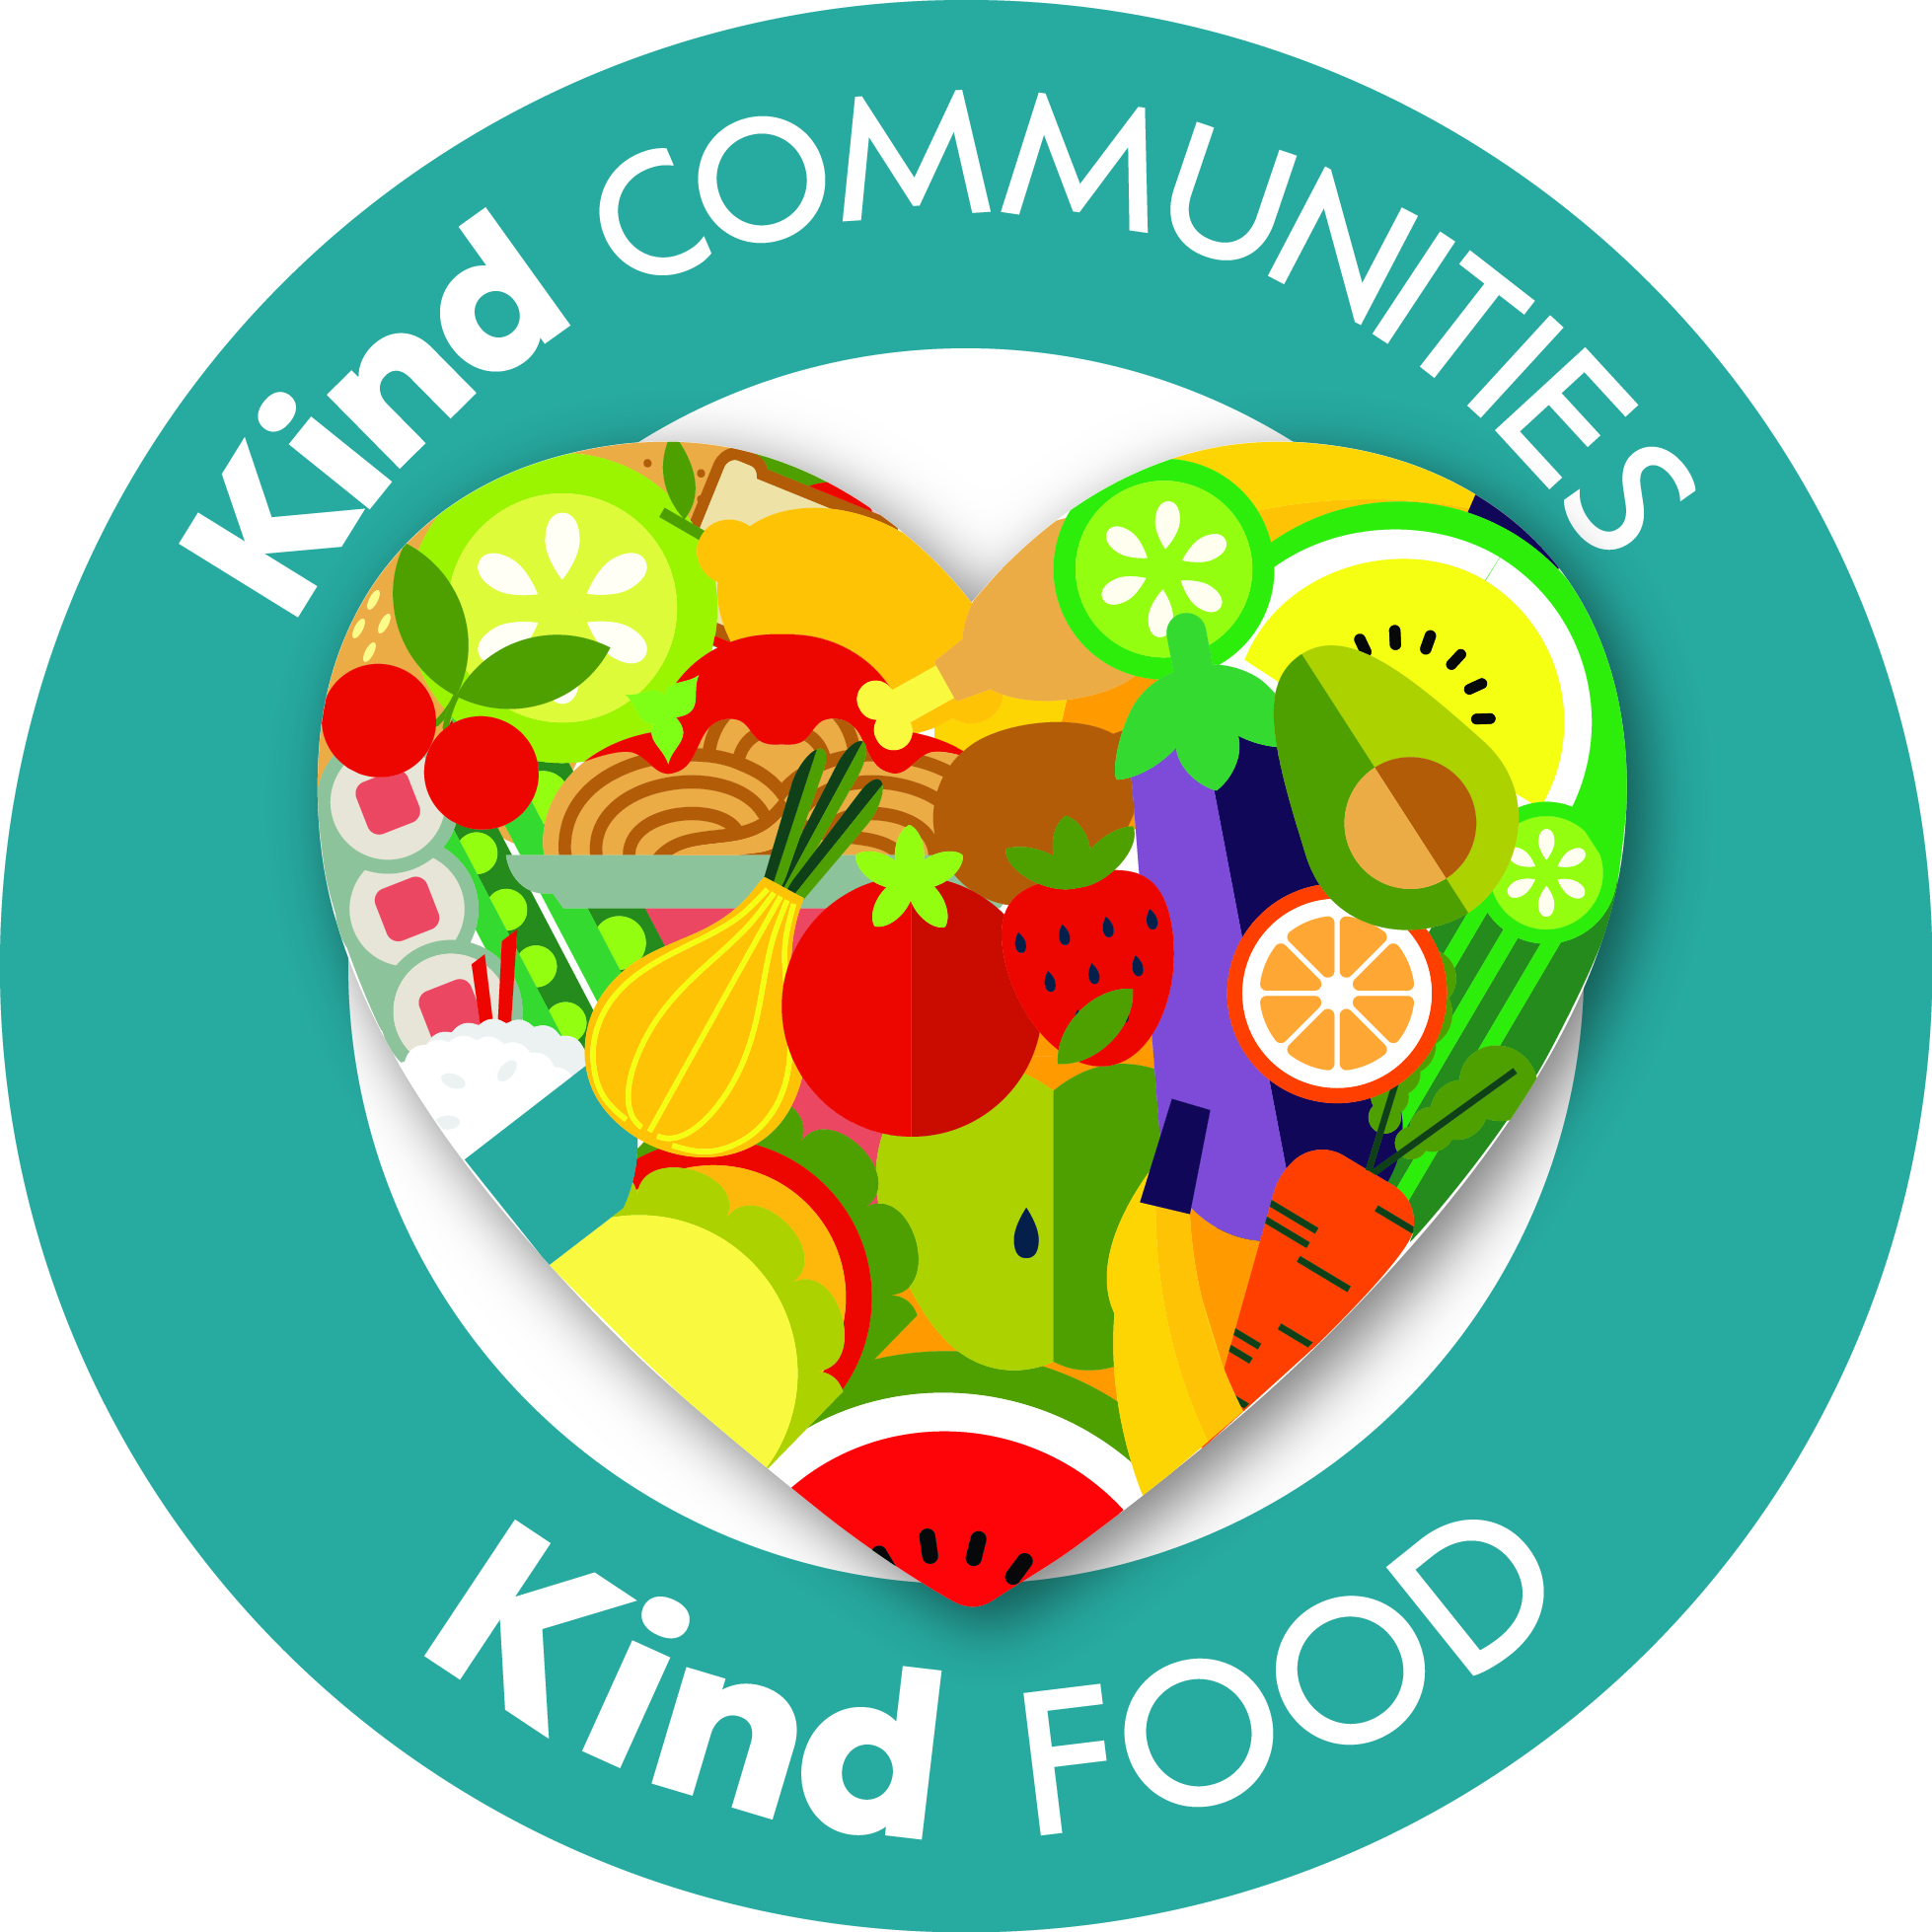 Kind Communities Kind Food logo